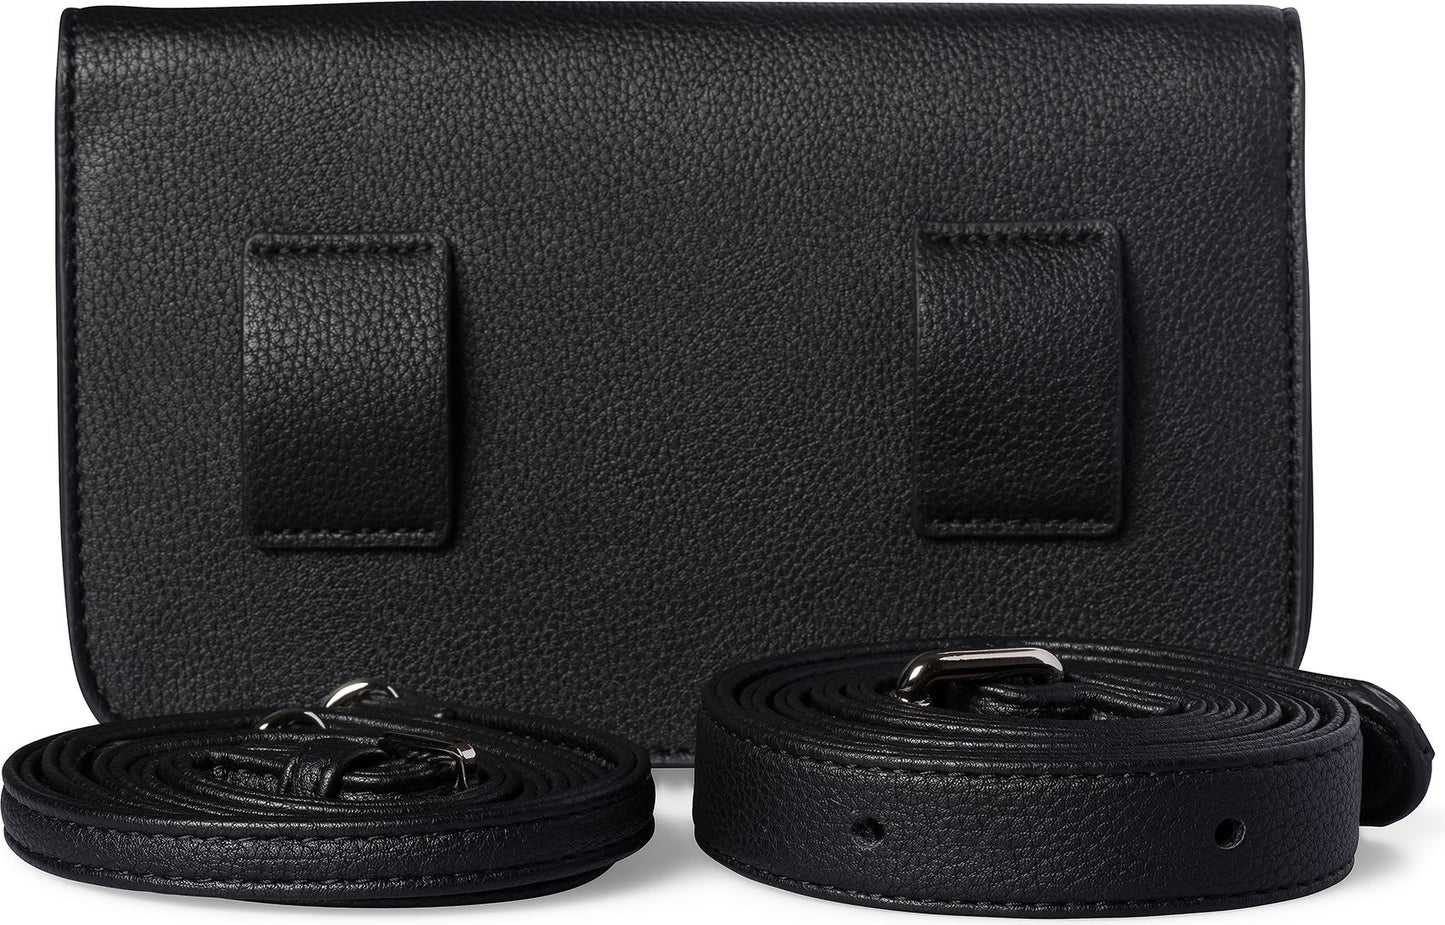 Lambert Accessories 3 In 1 Belt Bag Black Pebble